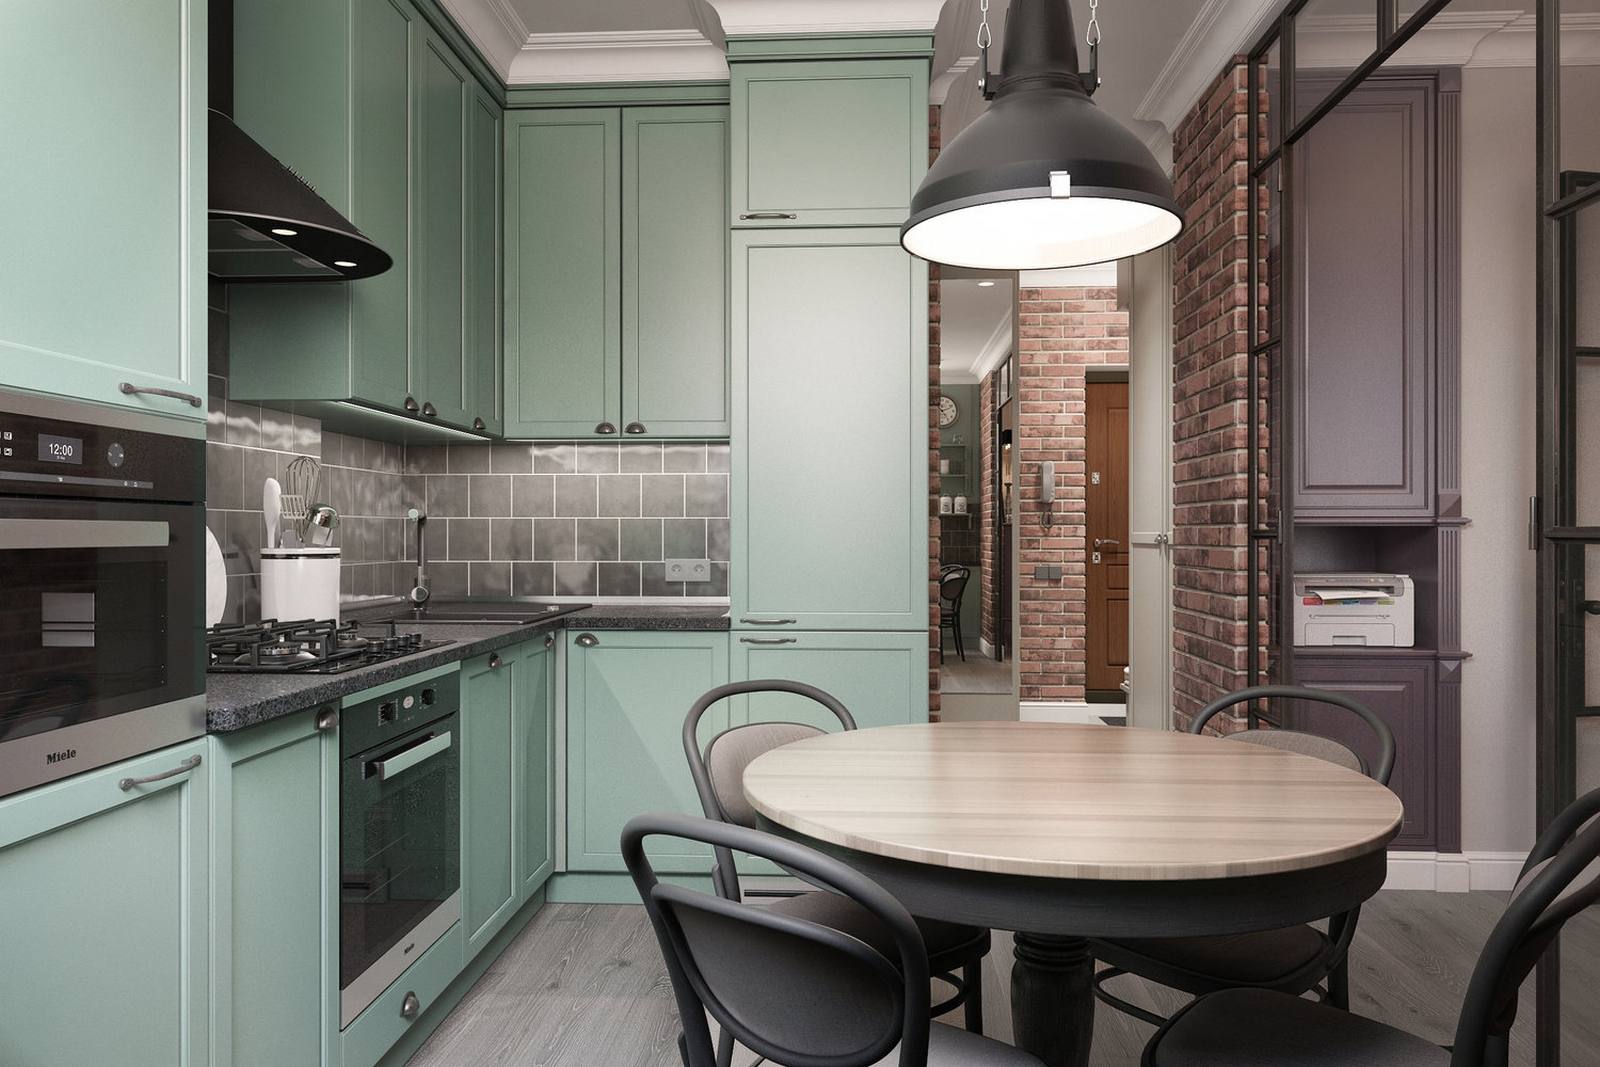 Khu vực nấu nướng và ăn uống được thiết kế tại một phòng riêng biệt, với phong cách đơn giản nhưng sang trọng và 'chất lừ' nhờ màu sắc phối hợp cùng nhau. Phòng bếp lựa chọn thiết kế kiểu chữ L để phù hợp với cấu trúc của căn hộ.